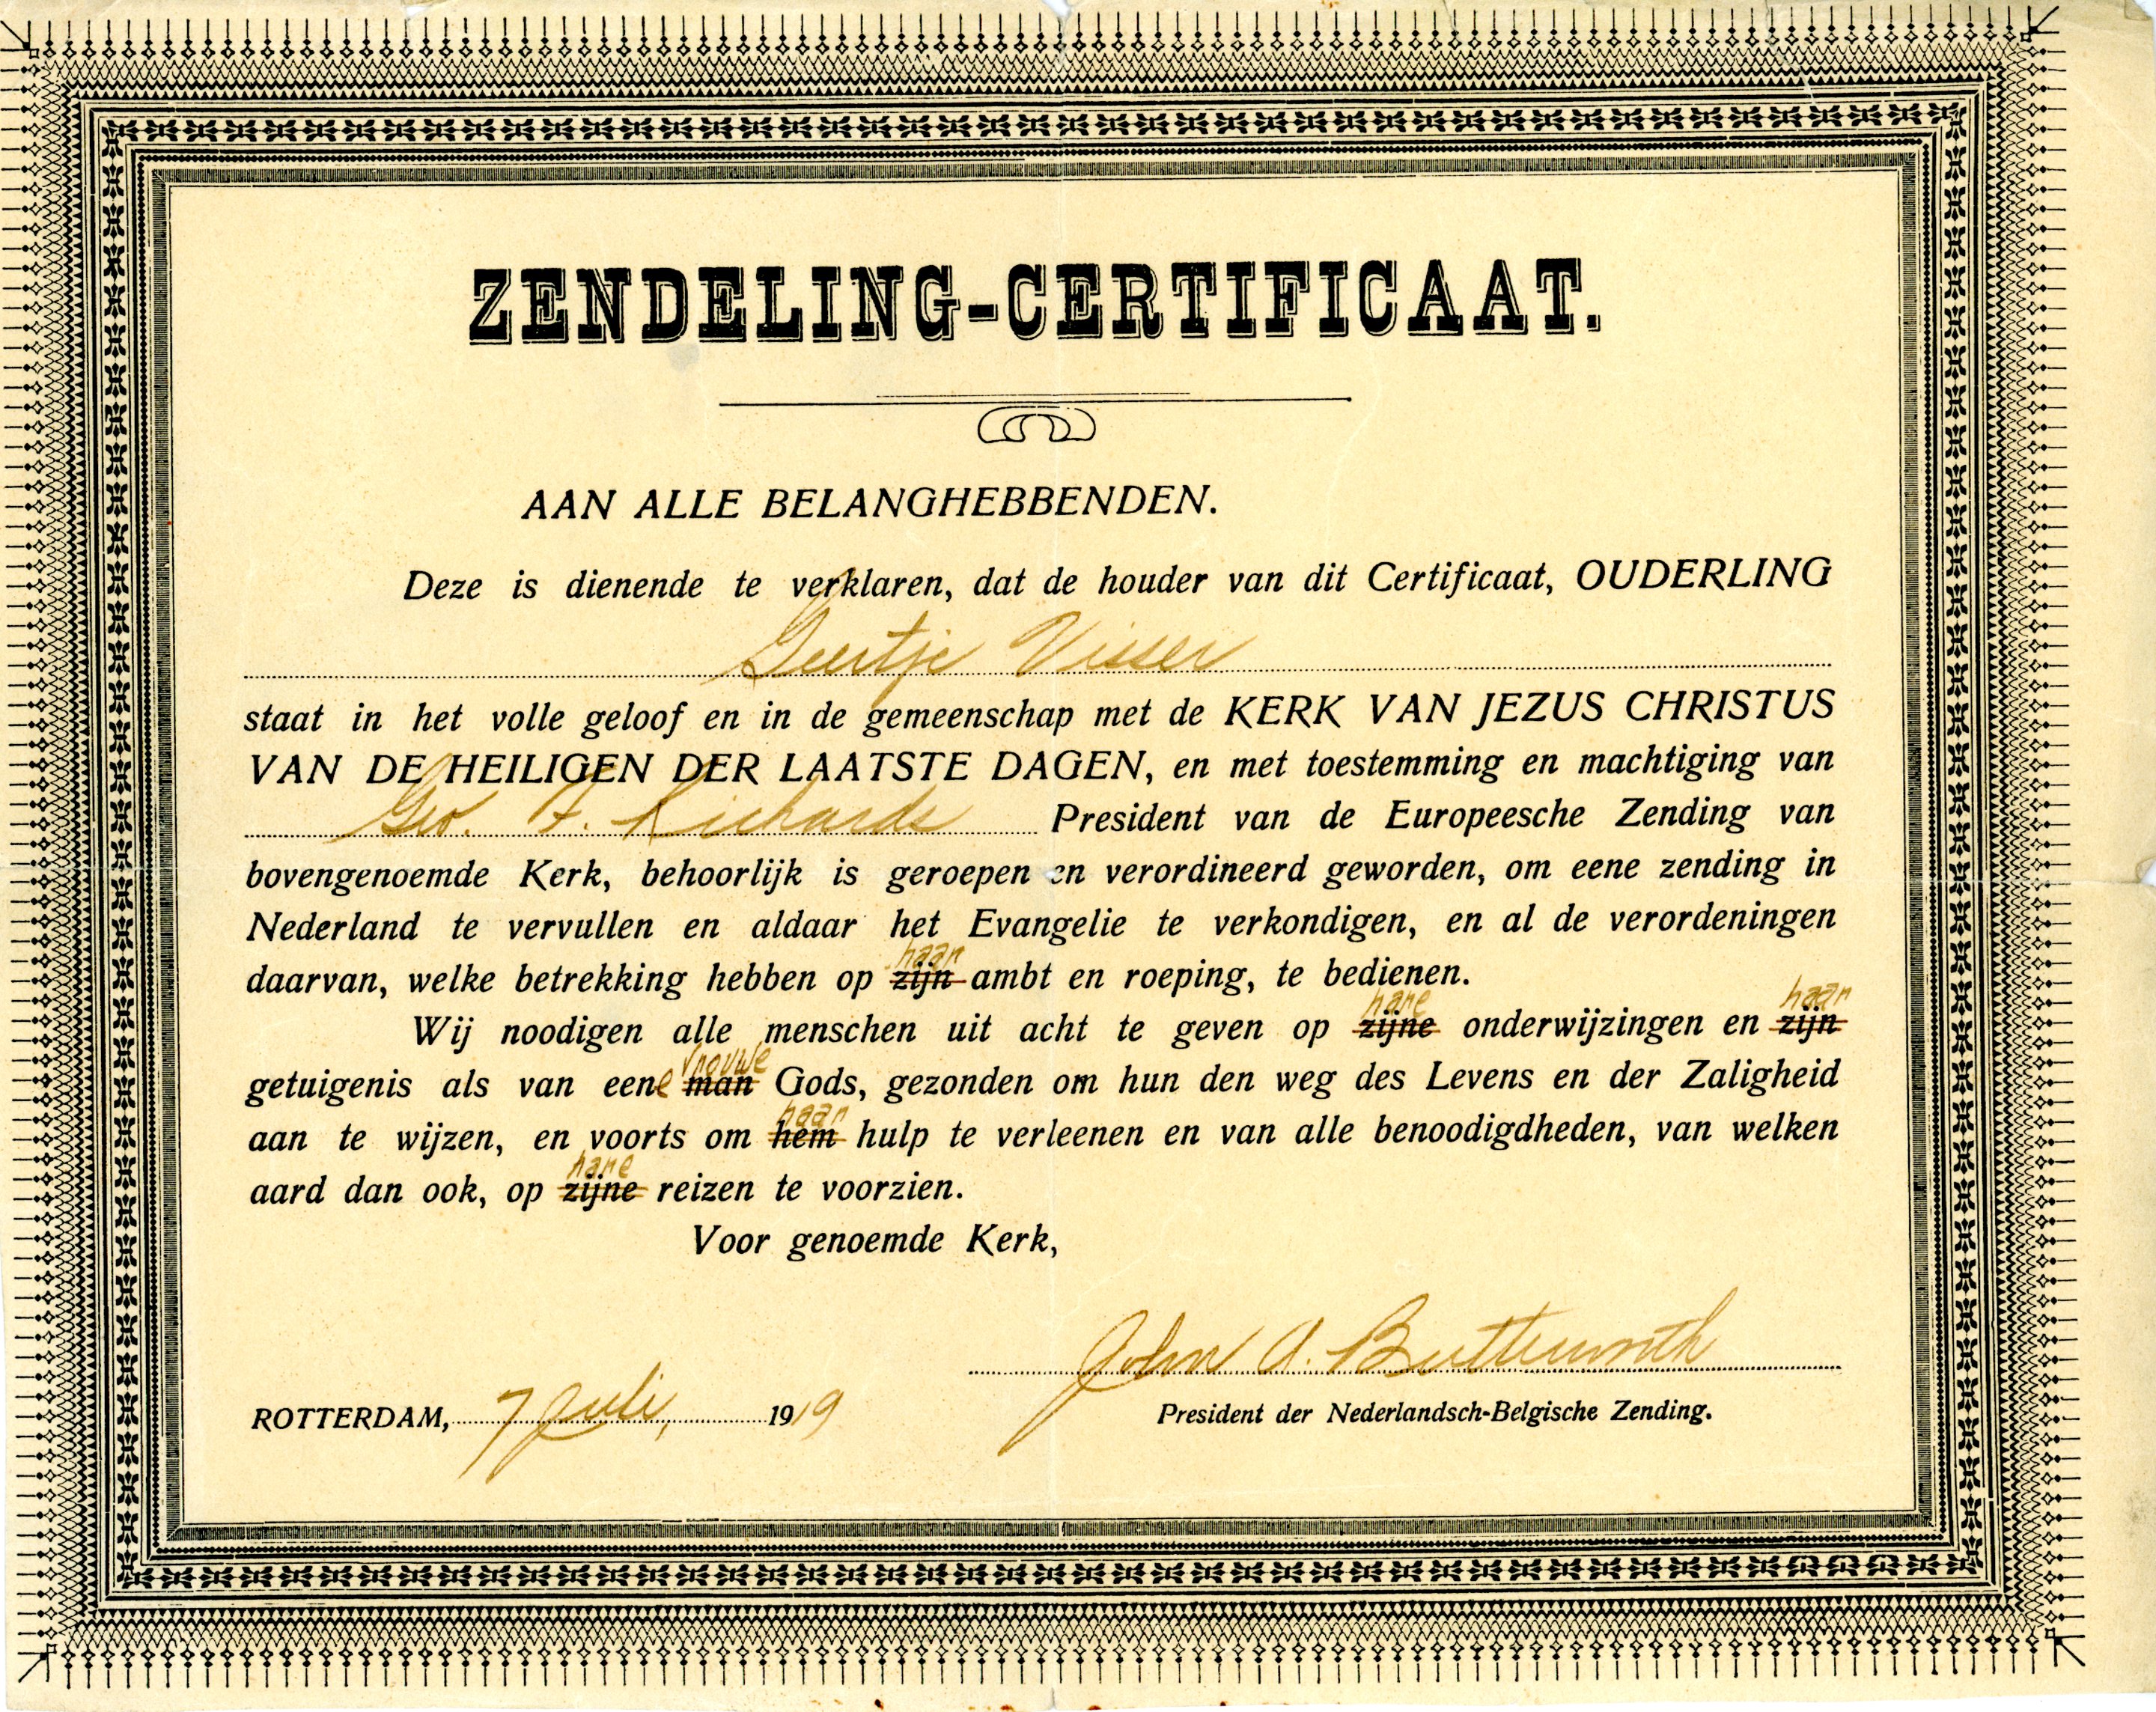 Geertje Visser Missionary Certificate,  1919 July 7